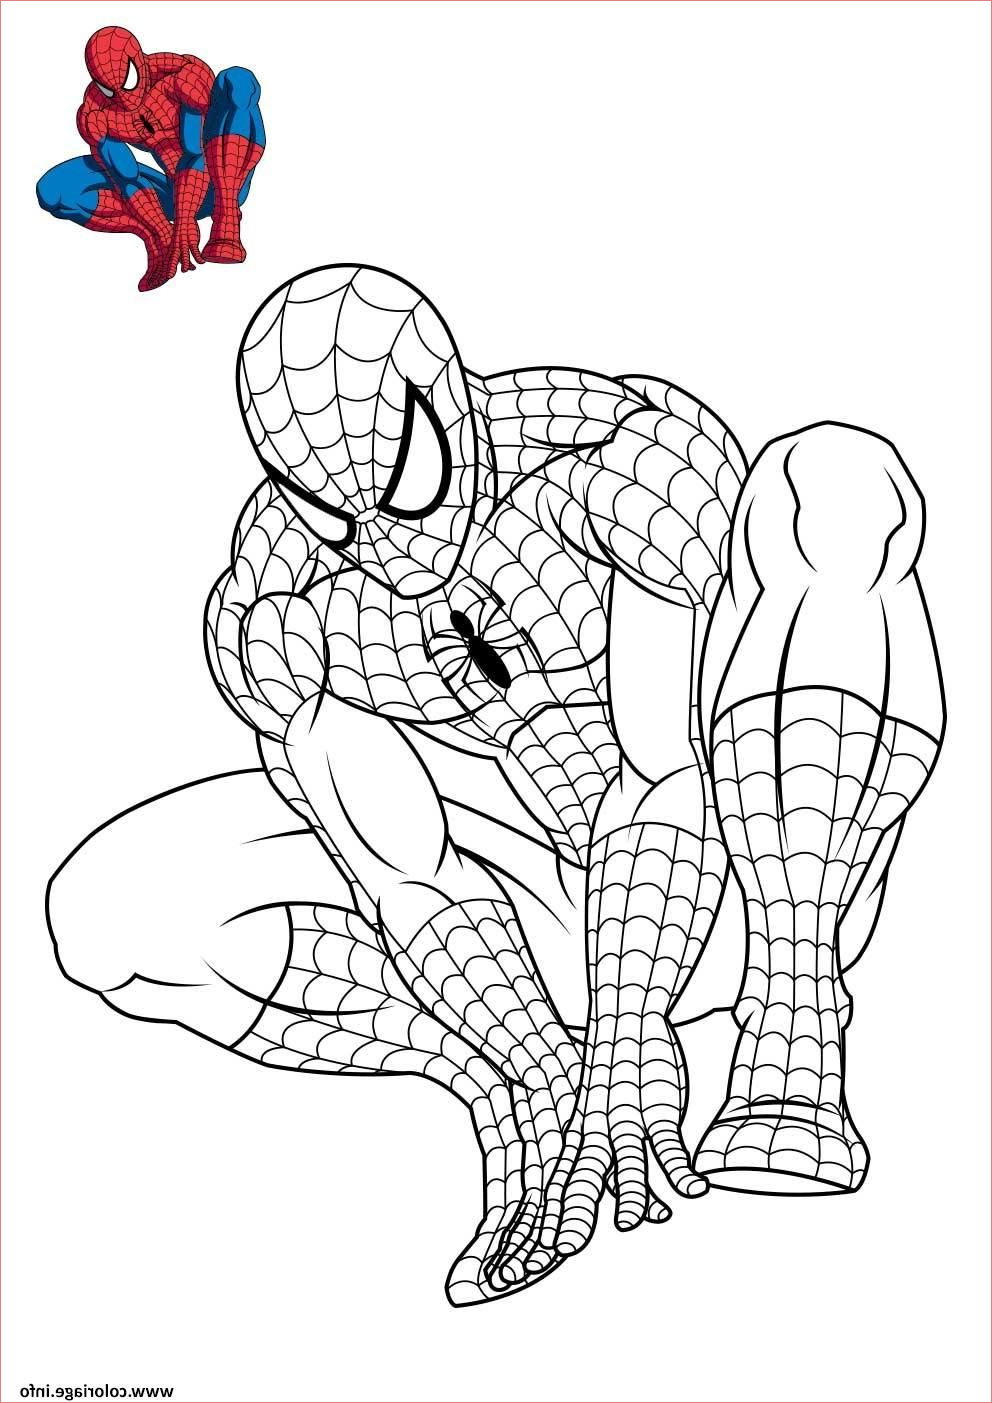 11 Fantaisie Coloriage Spiderman A Imprimer Photos  COLORIAGE